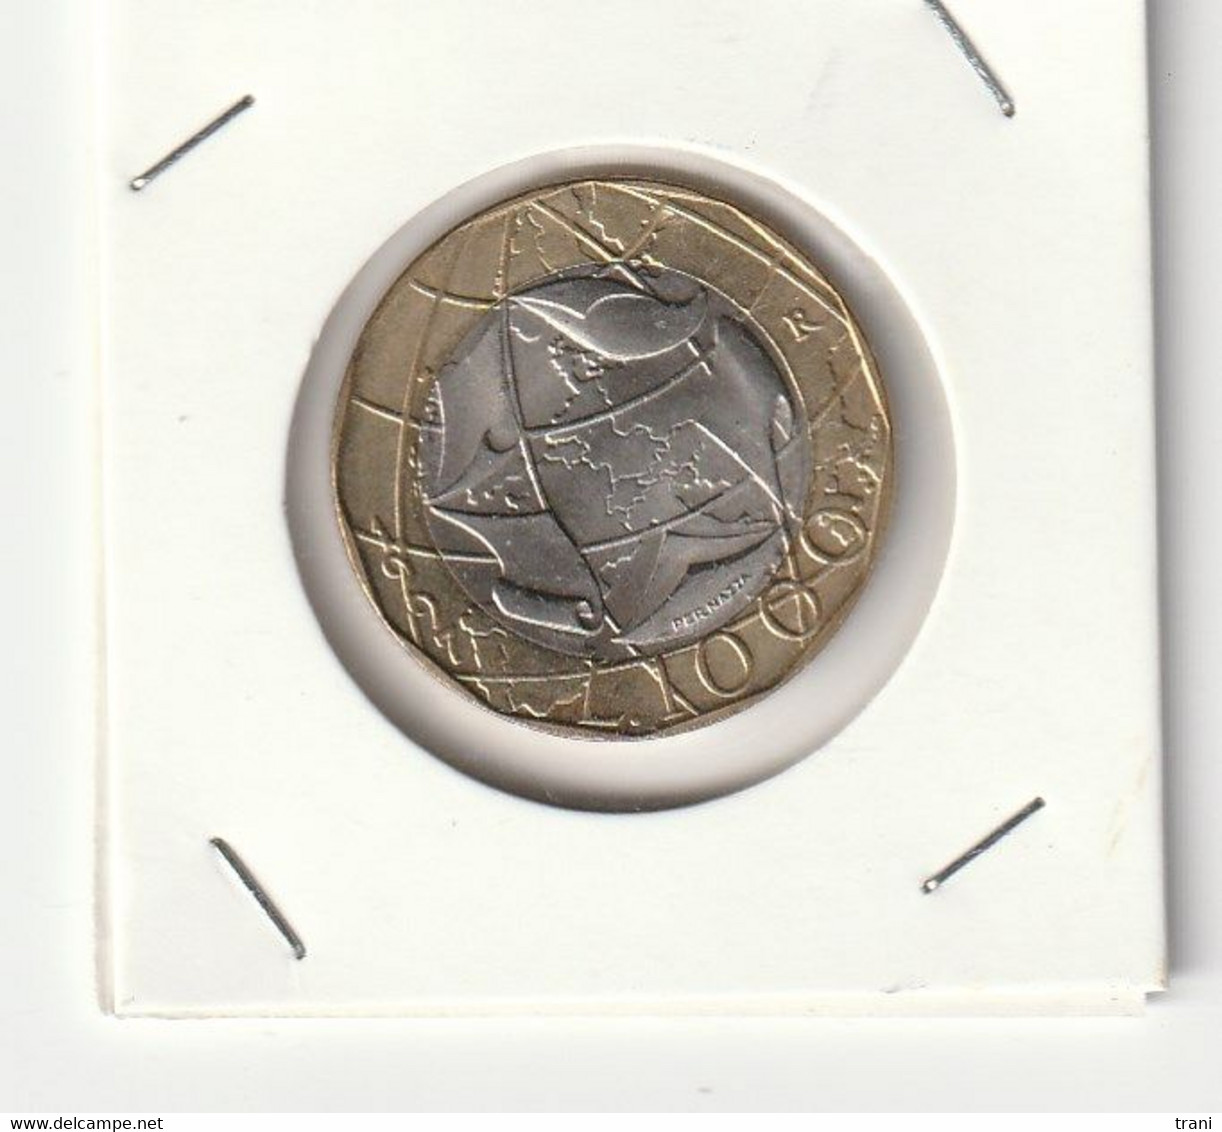 1997 - Moneta Da 1000 Lire Con Confini Sbagliati - Fior Di Conio - 1 000 Lire